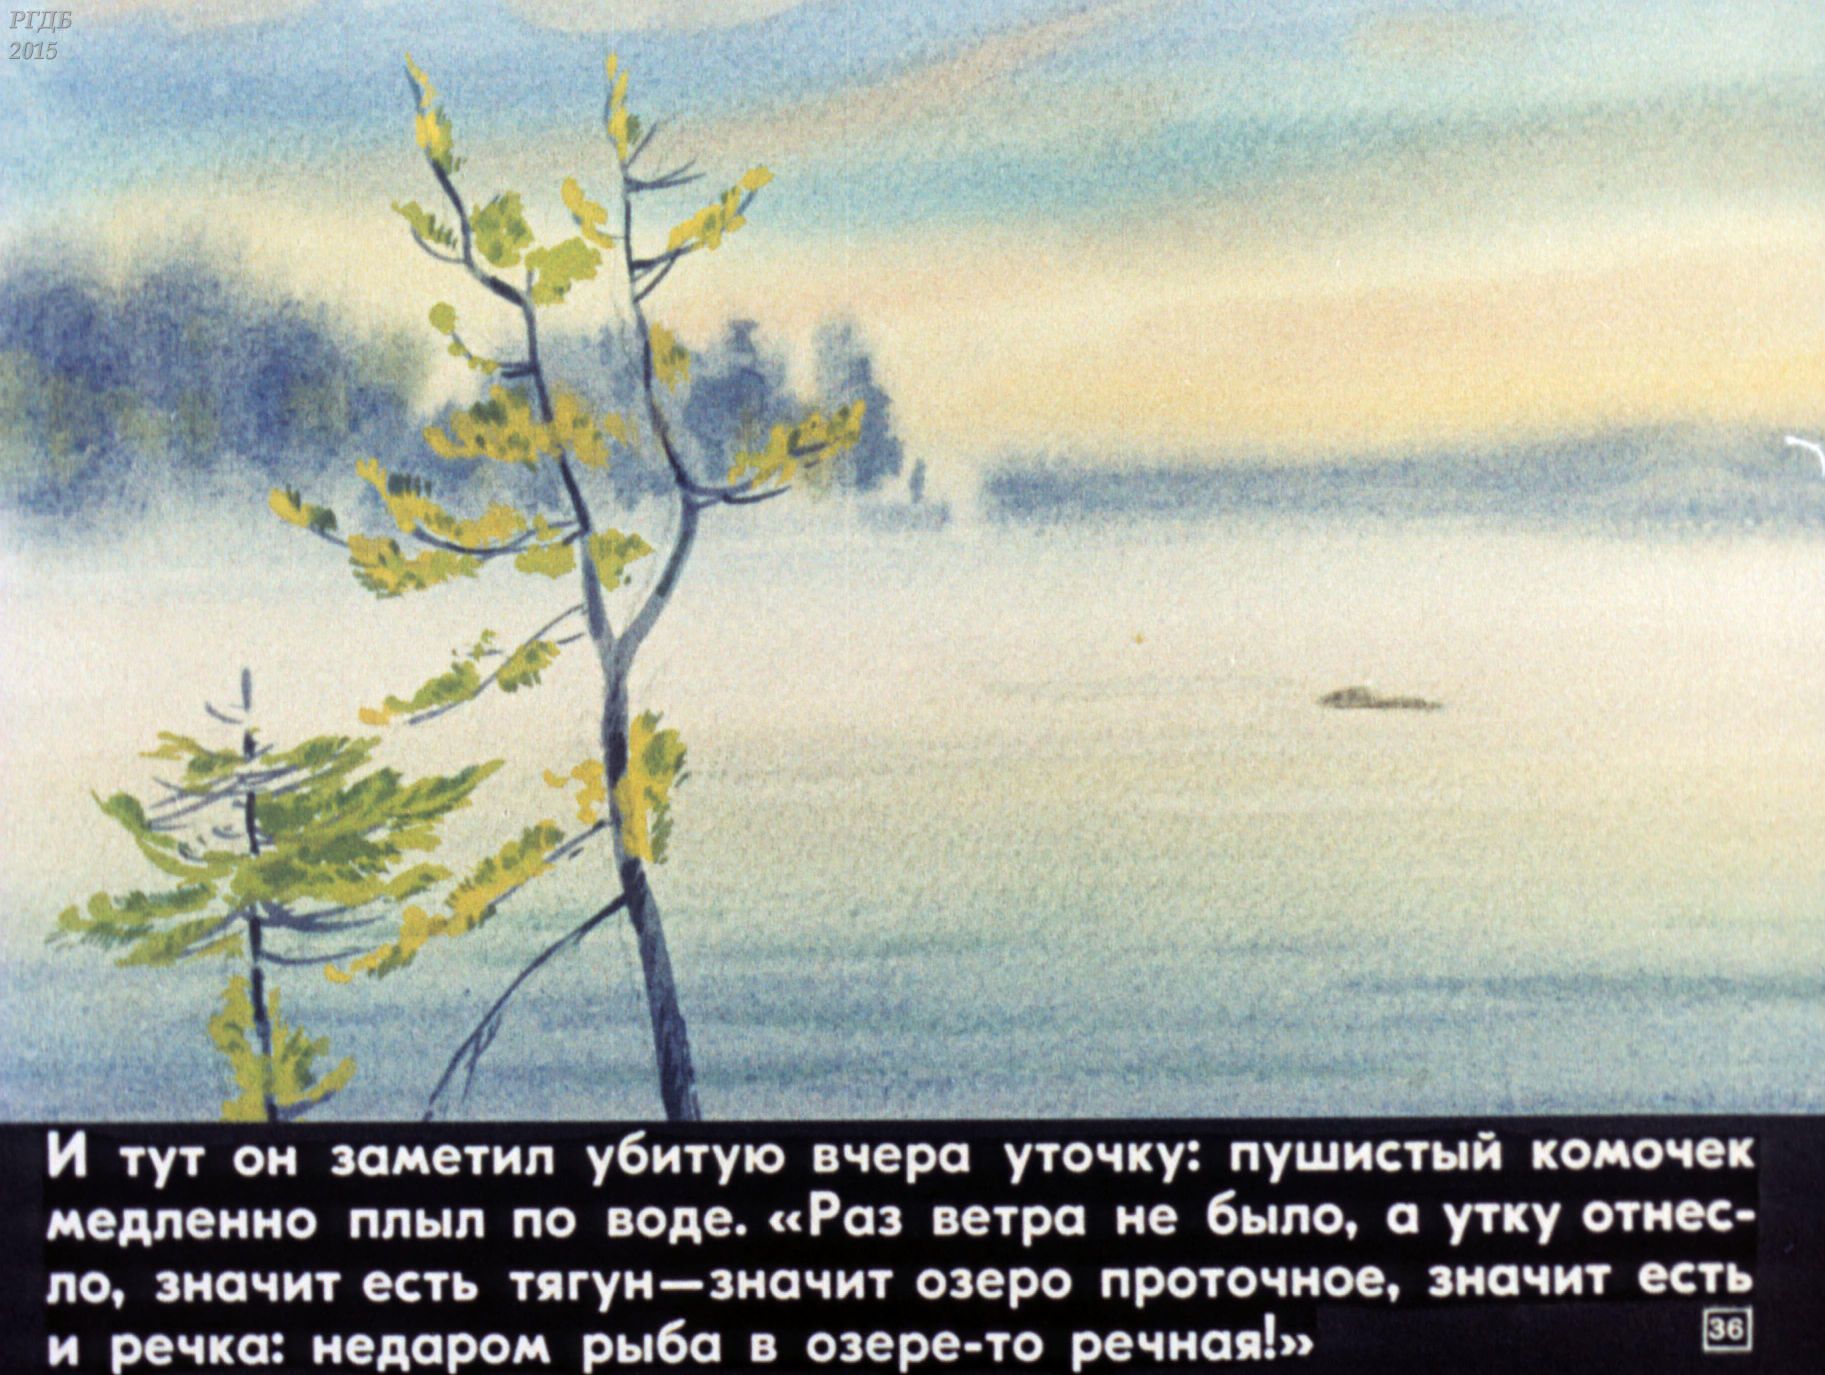 Первый пароход который встретил васютка. Астафьев Васюткино озеро иллюстрации. Иллюстрация к рассказу Васюткино озеро 5. Иллюстрация к рассказу Васютка Васюткино озеро. Астафьев 5 класс Васюткино озеро.